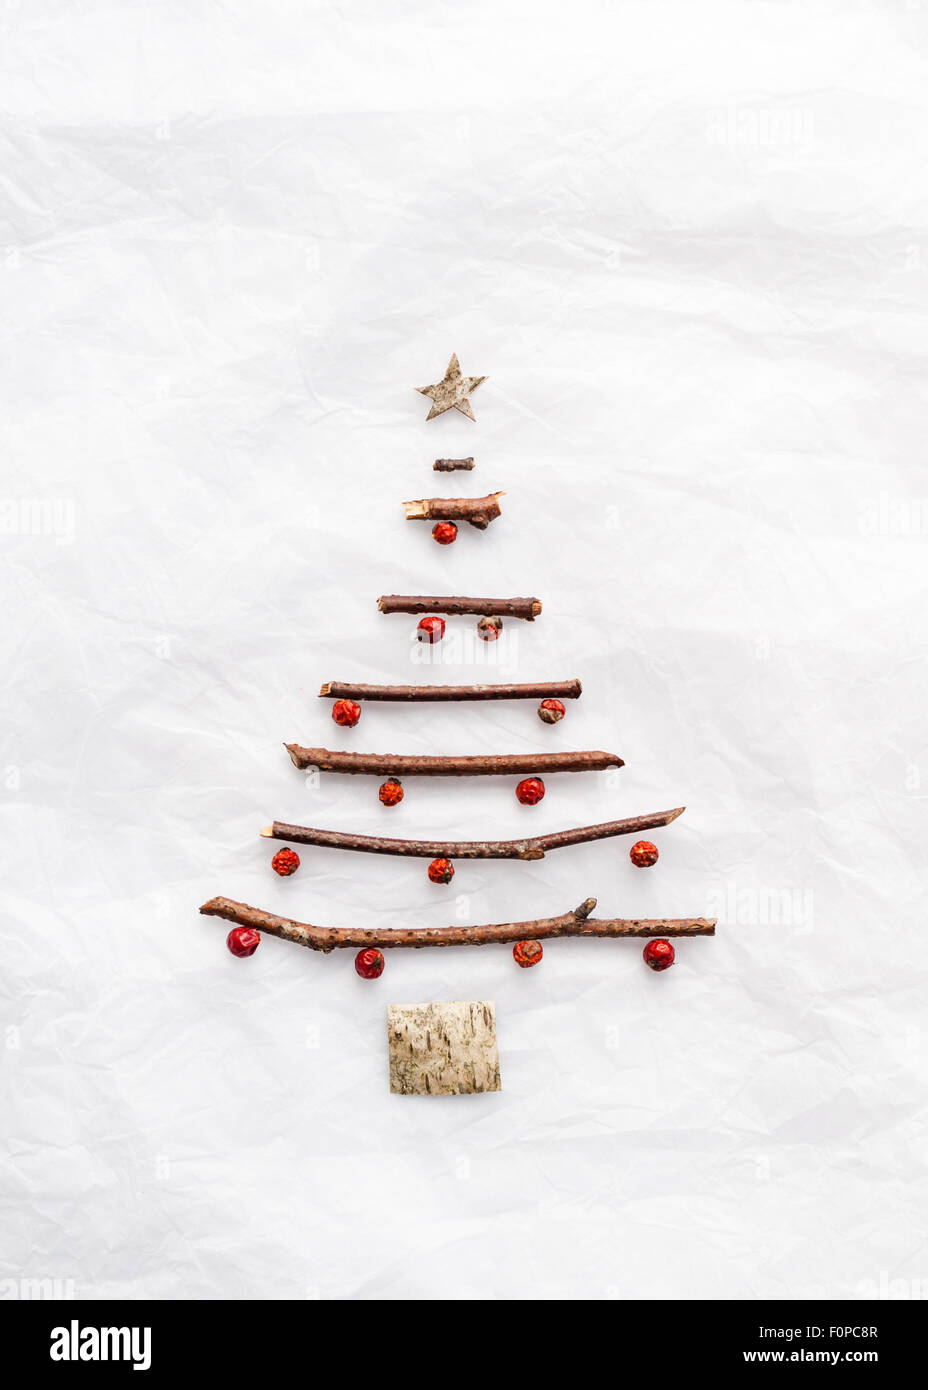 Una simple forma de árbol de Navidad hecho con ramitas de abedul corteza y bayas rojas en papel de tejido fino blanco Foto de stock